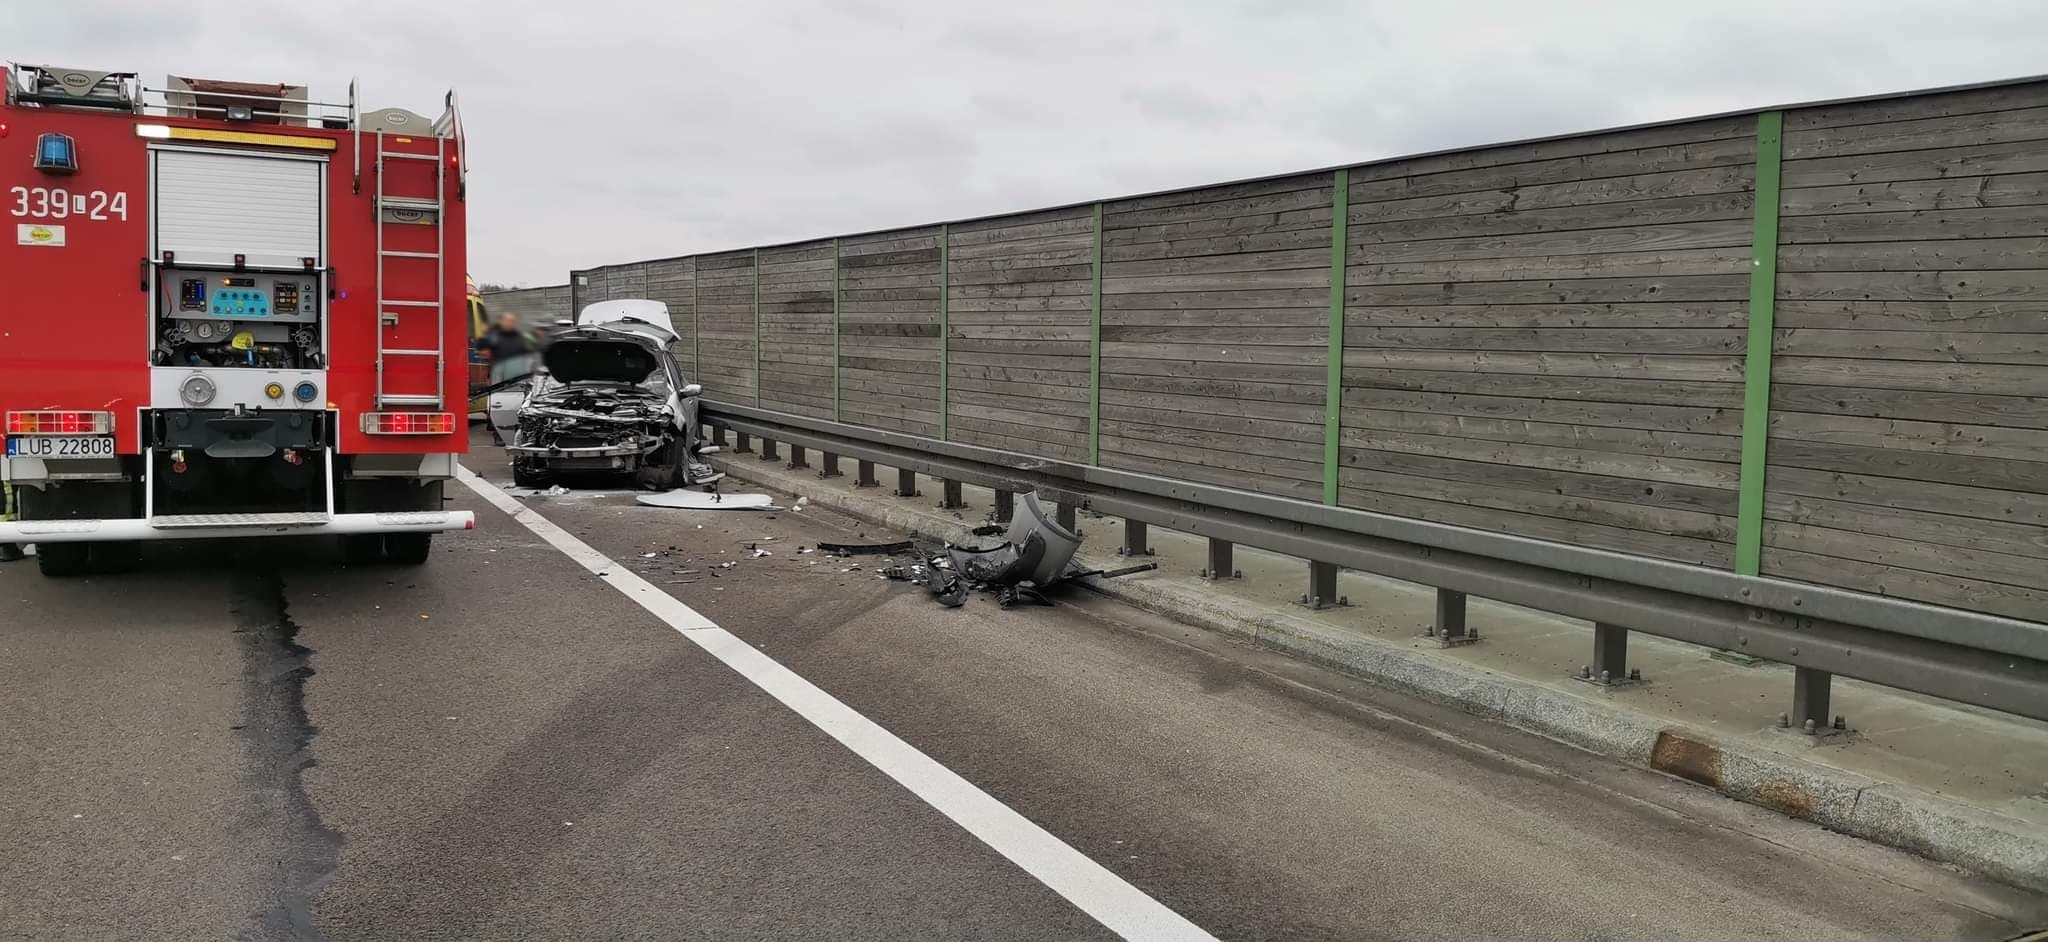 Groźny wypadek na trasie Lublin – Warszawa. Pojazd osobowy uderzył w naczepę ciężarówki (zdjęcia, wideo)